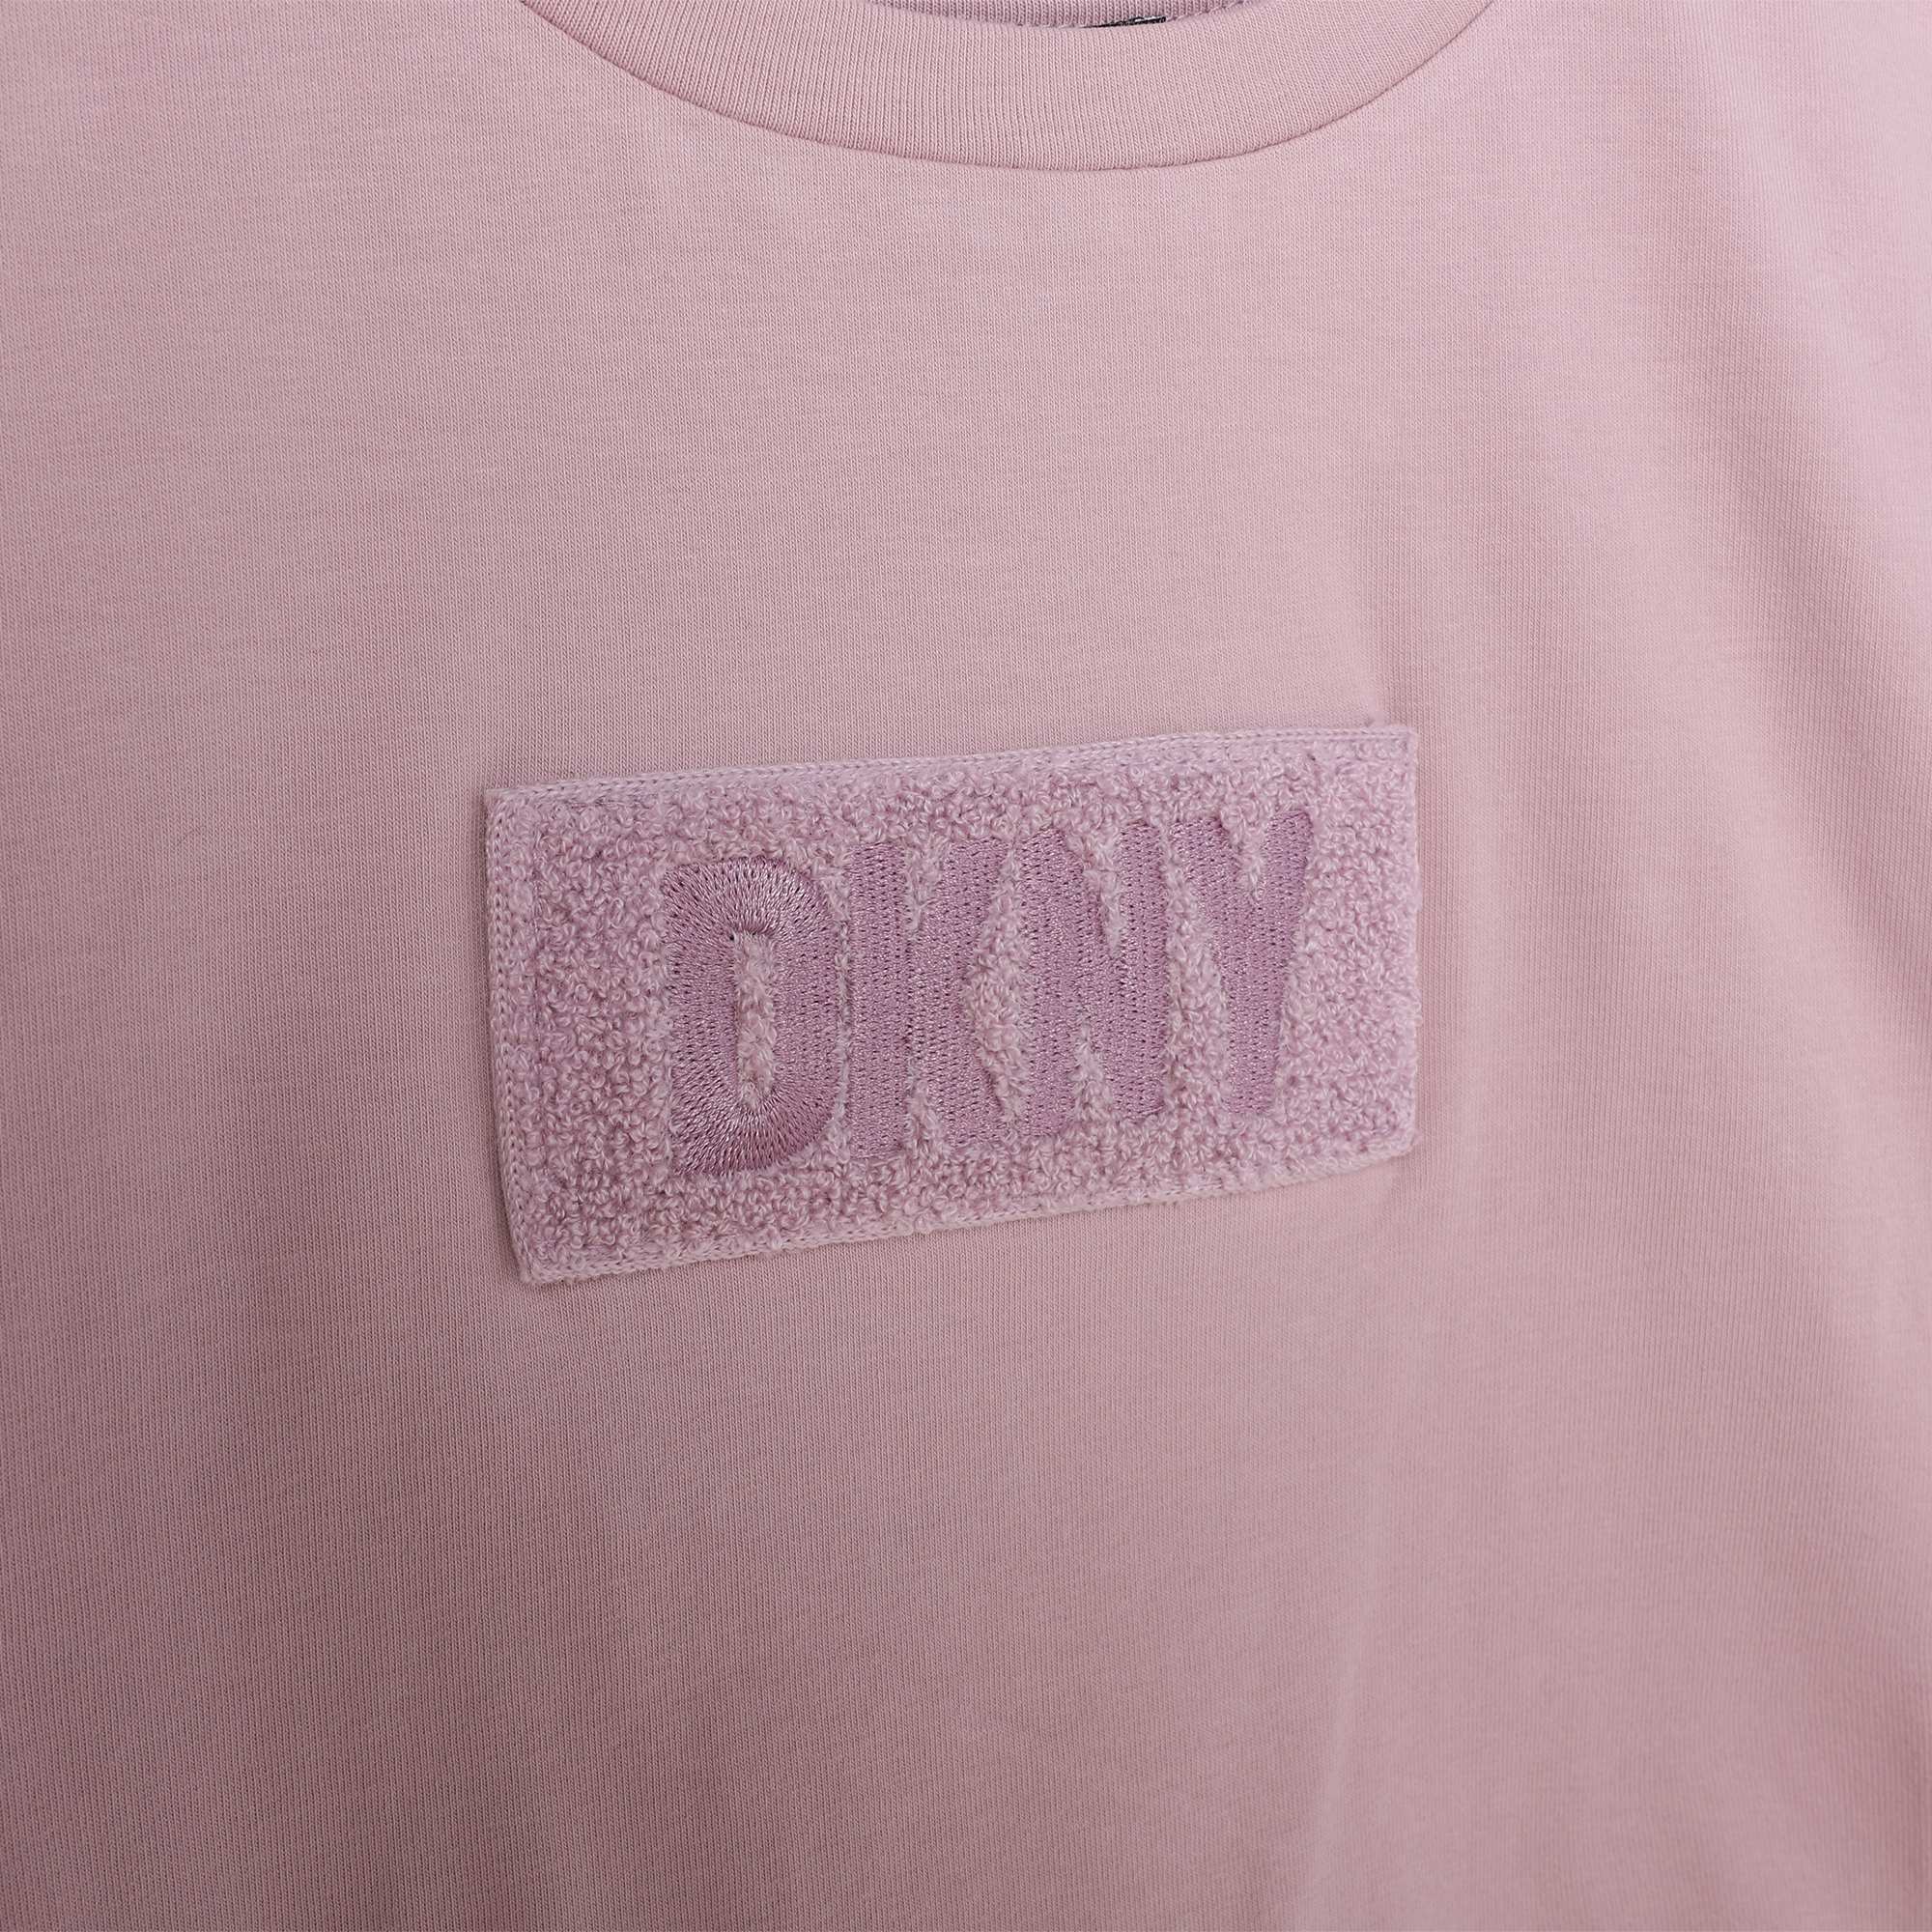 Kurzarm-T-Shirt aus Baumwolle DKNY Für MÄDCHEN